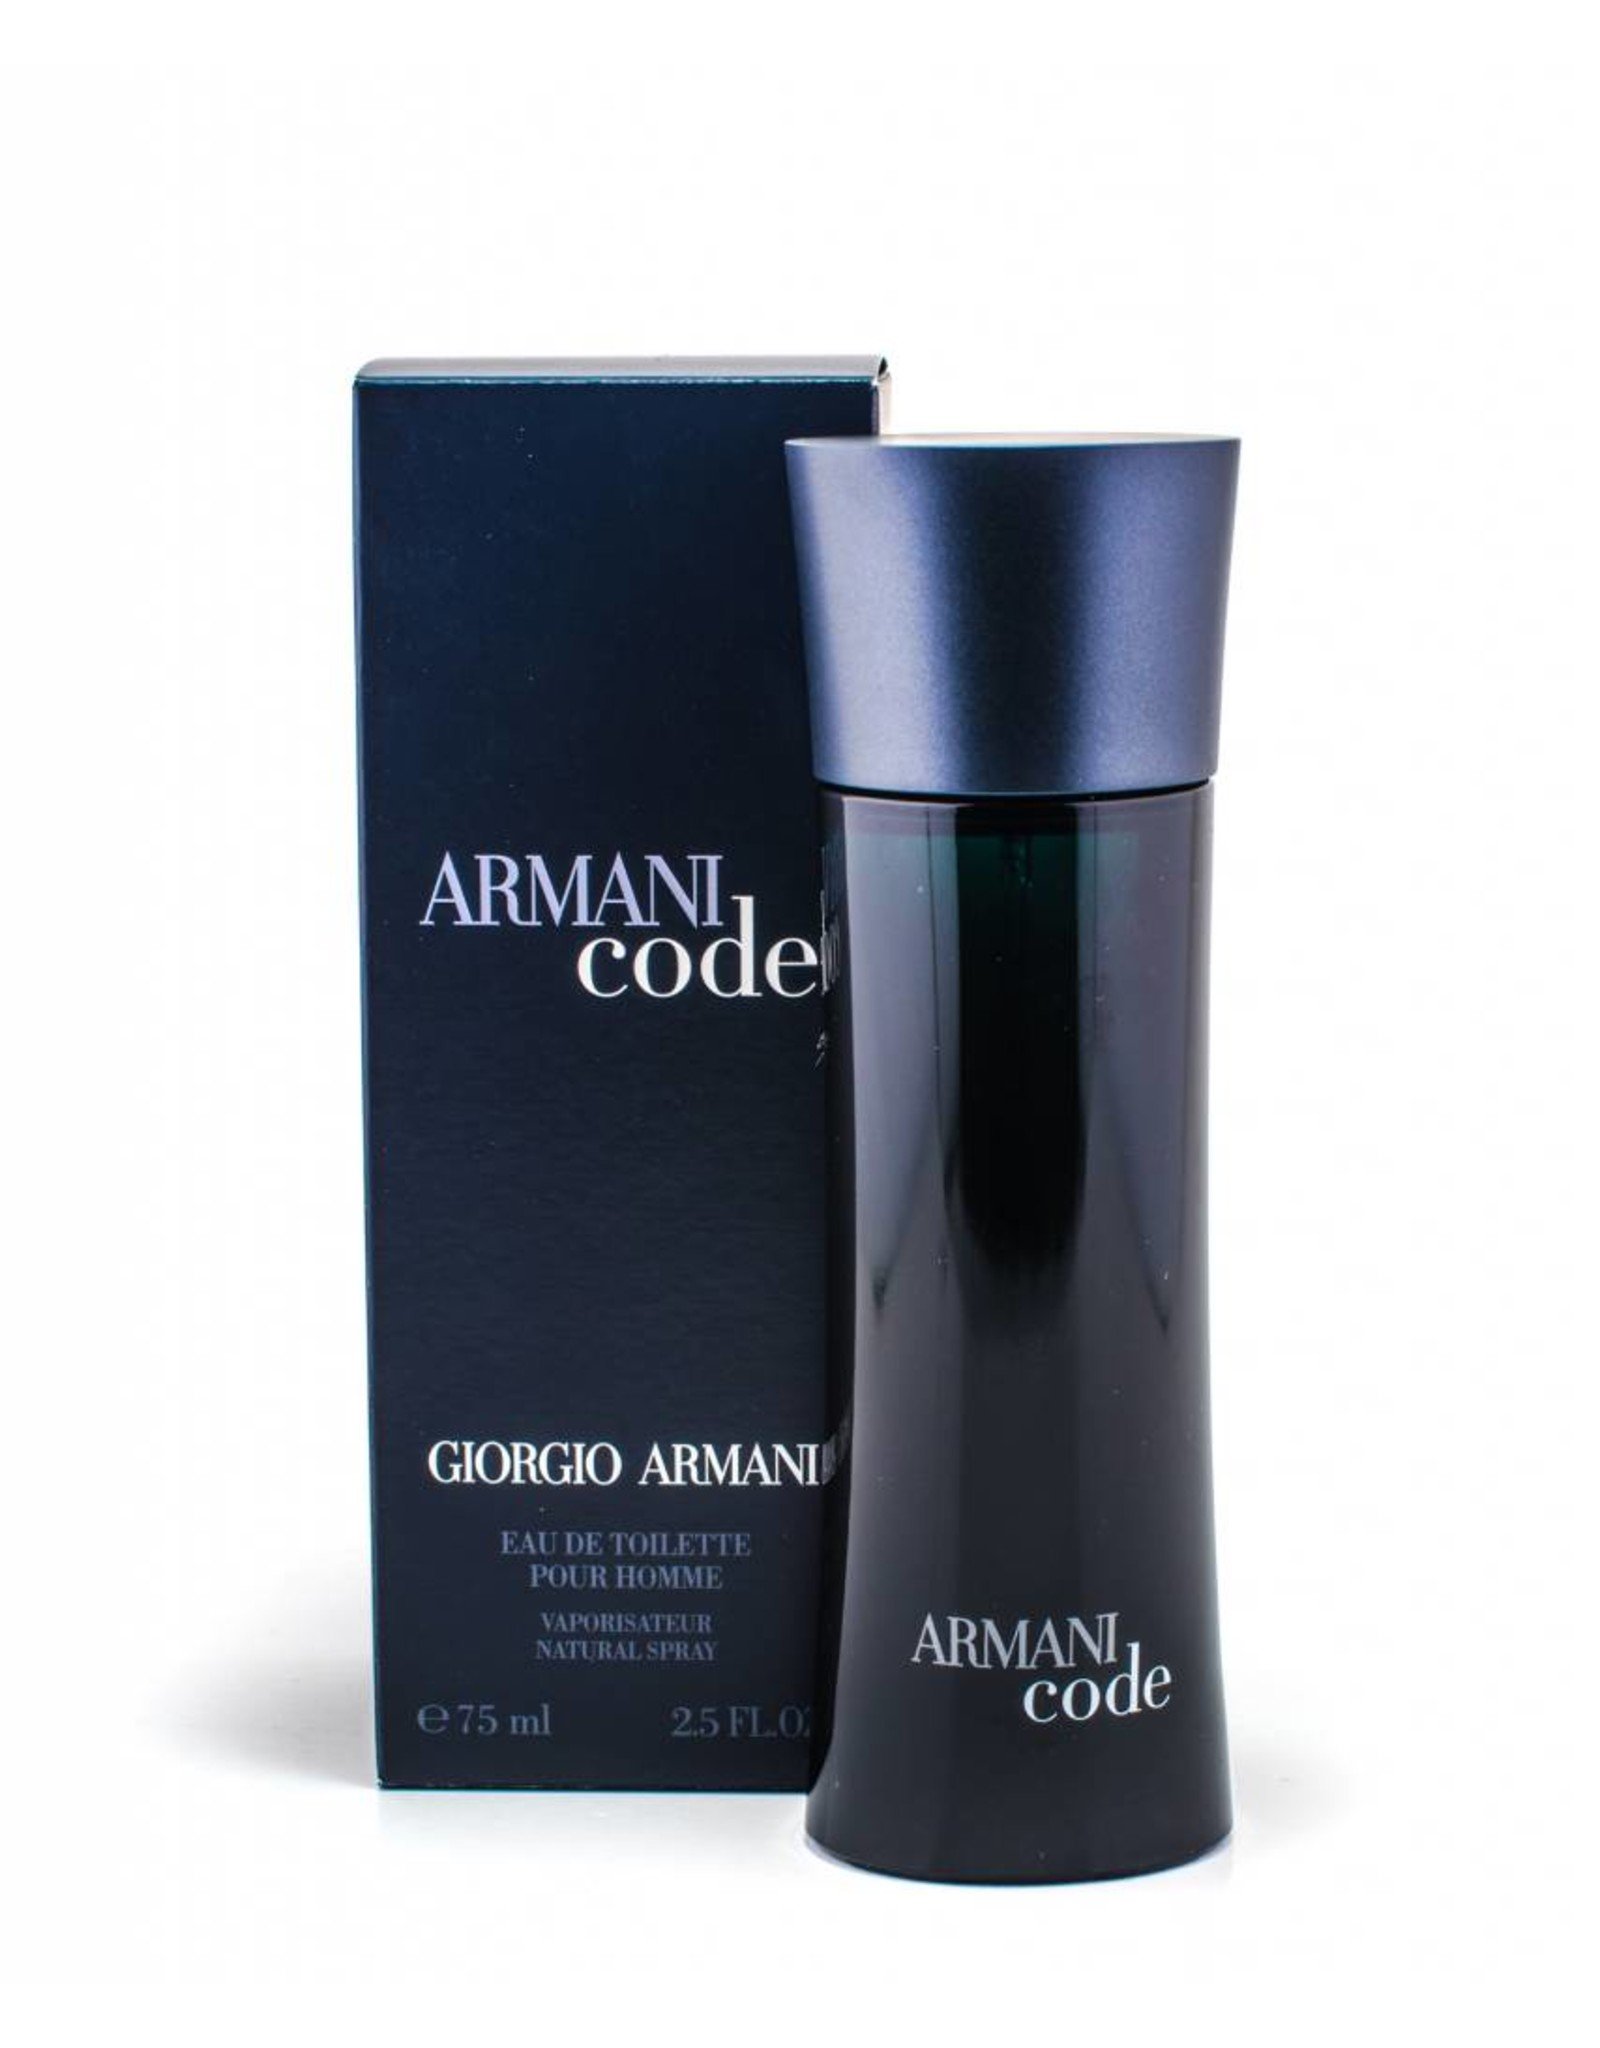 giorgio armani code men's cologne